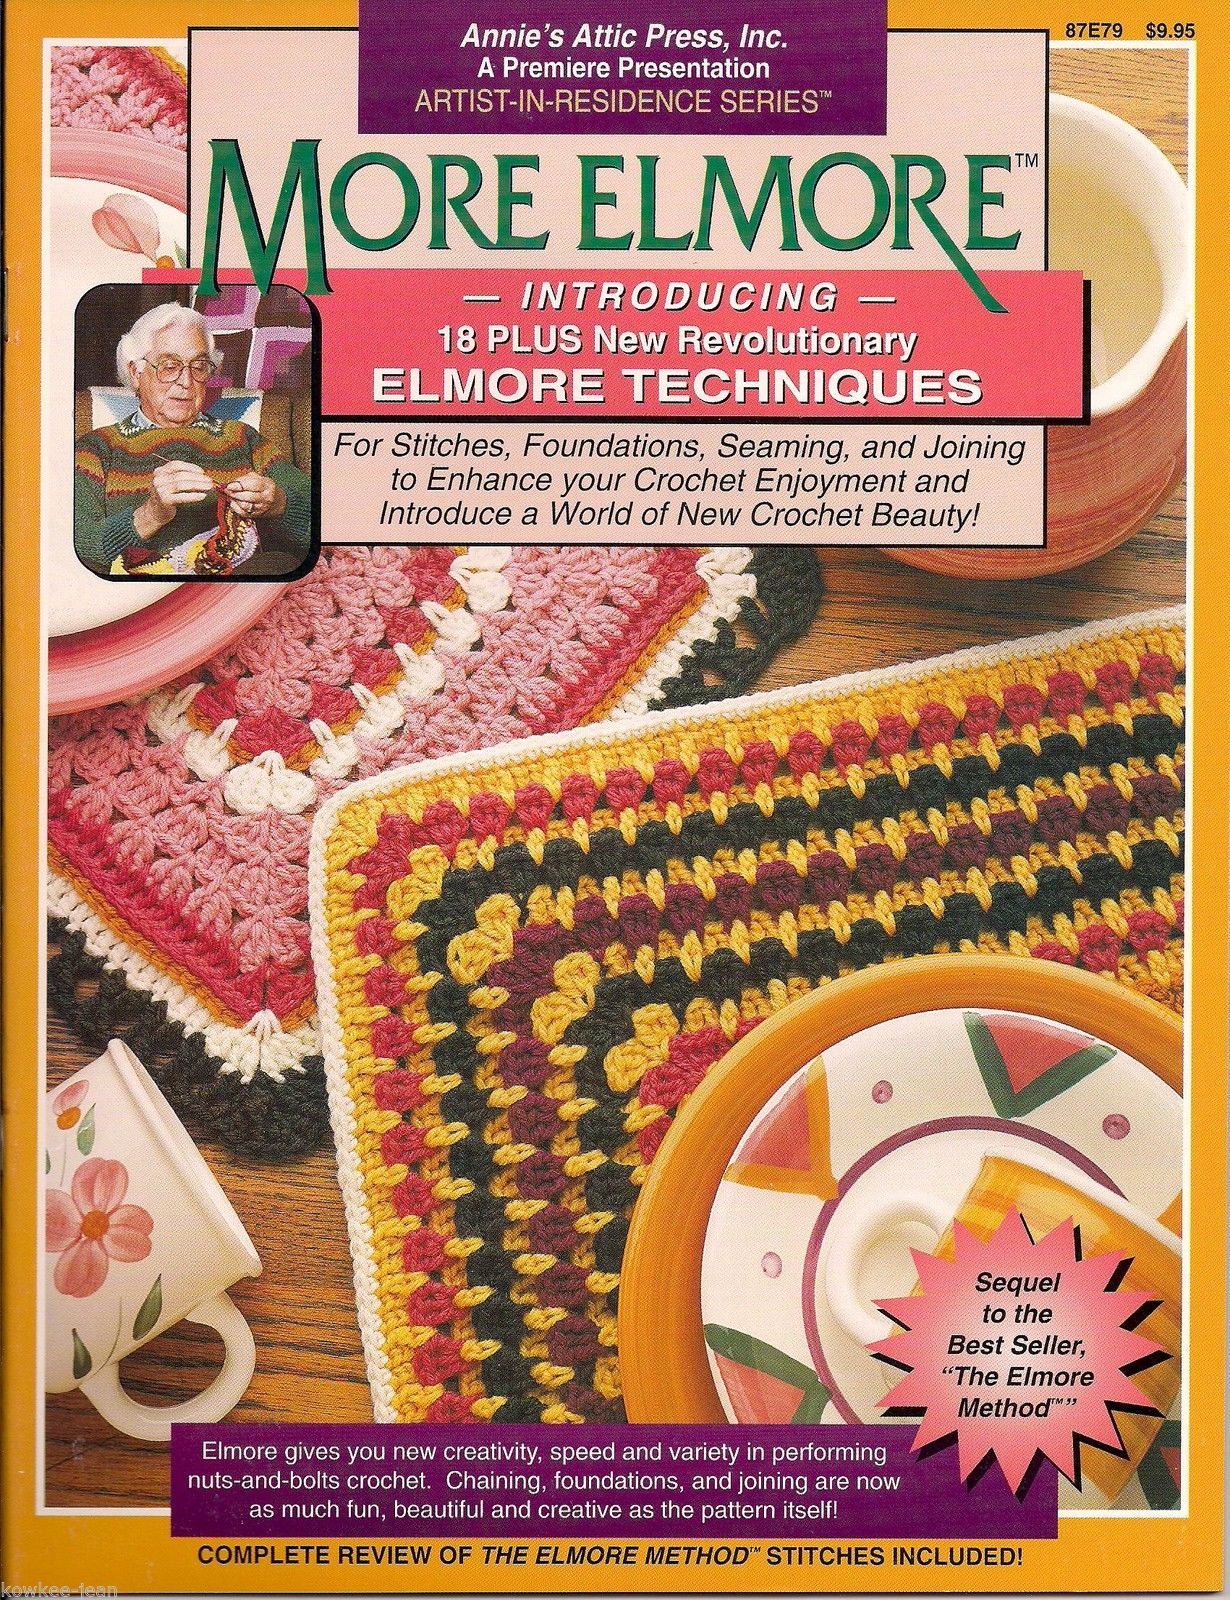 MORE ELMORE: 18+ new revolutionary Elmore techniques, learn the Elmore method - $39.95